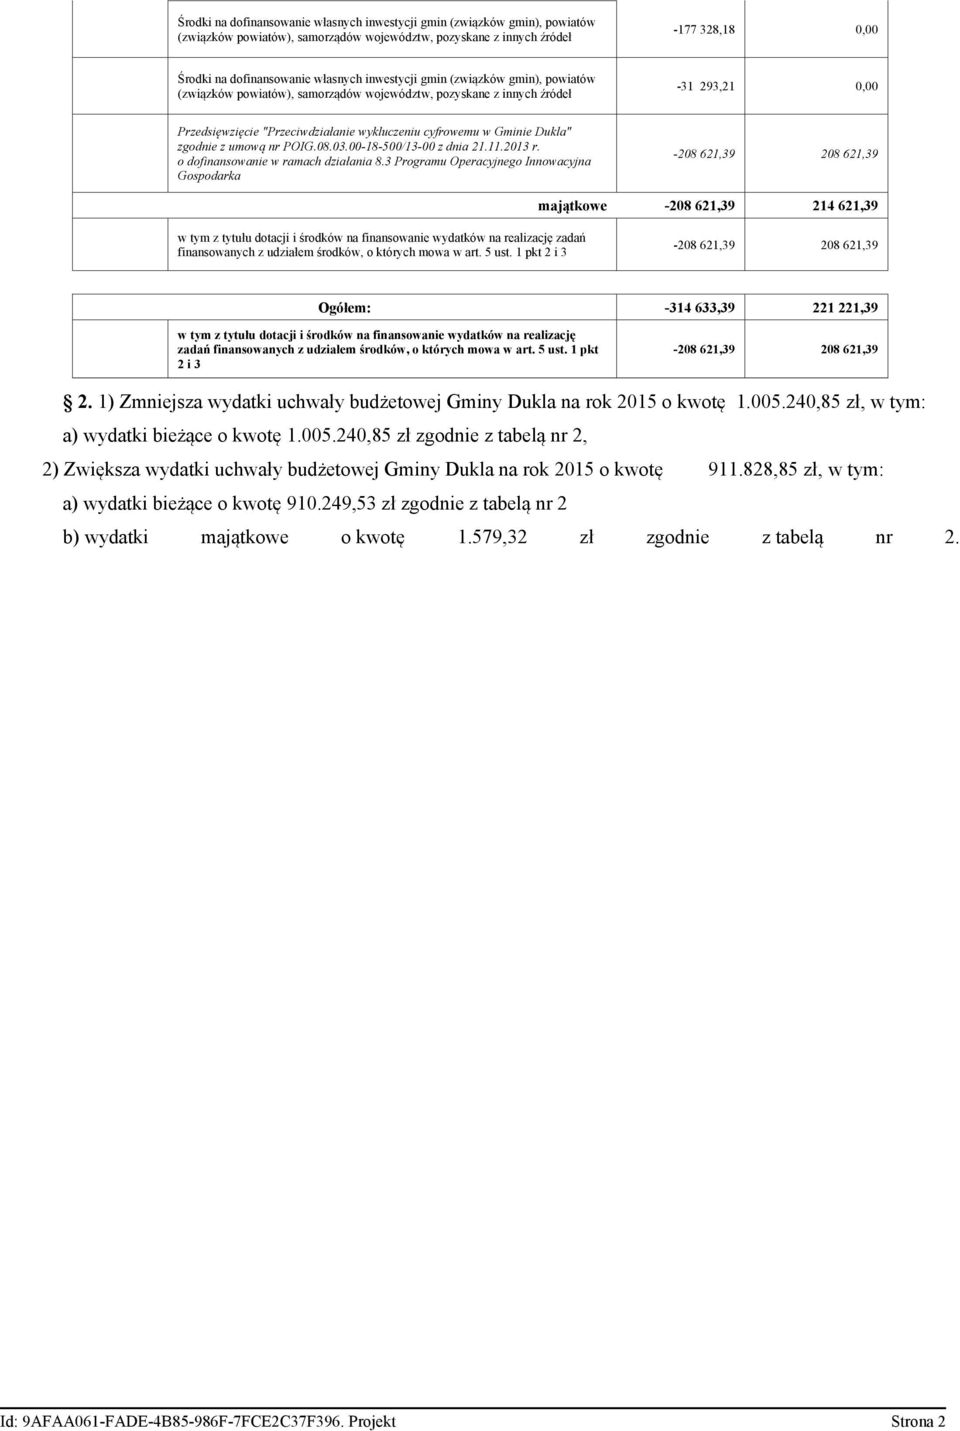 zgodnie z umową nr POIG.08.03.00-18-500/13-00 z dnia 21.11.2013 r. o dofinansowanie w ramach działania 8.